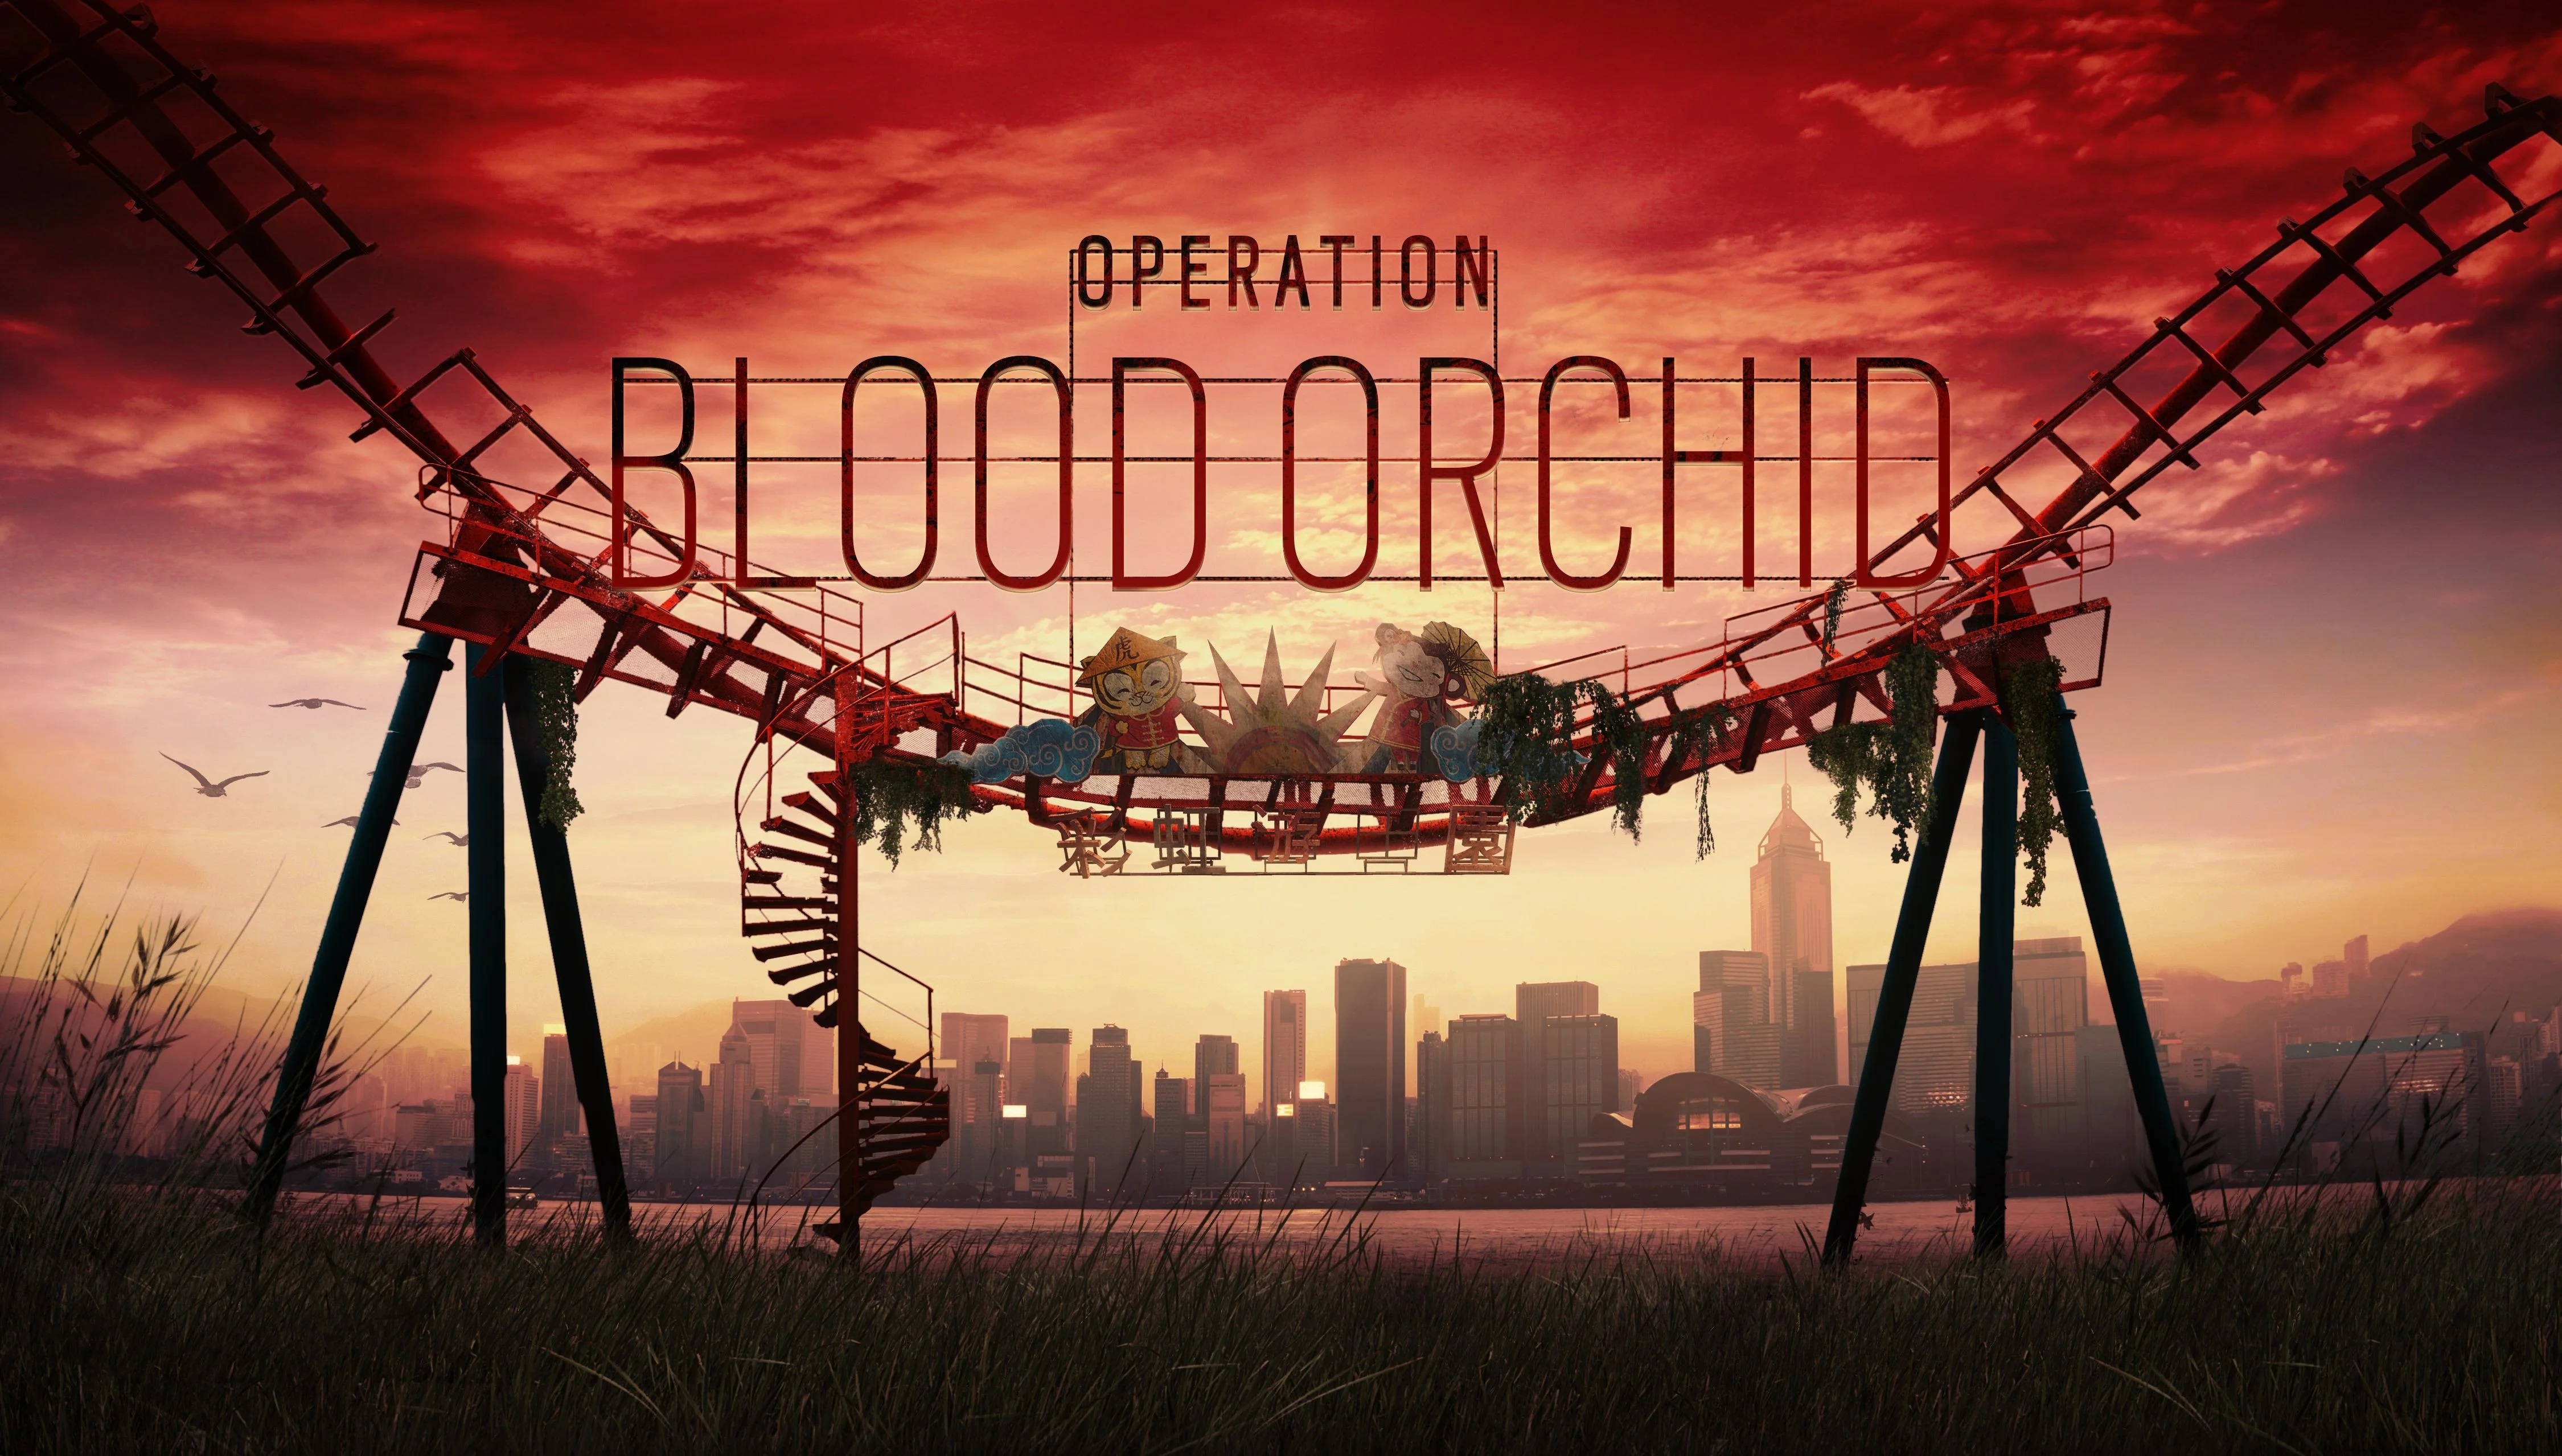 Превью Tom Clancy’s Rainbow Six: Siege — Operation Blood Orchid. Луна-парк со стрельбой - изображение обложка